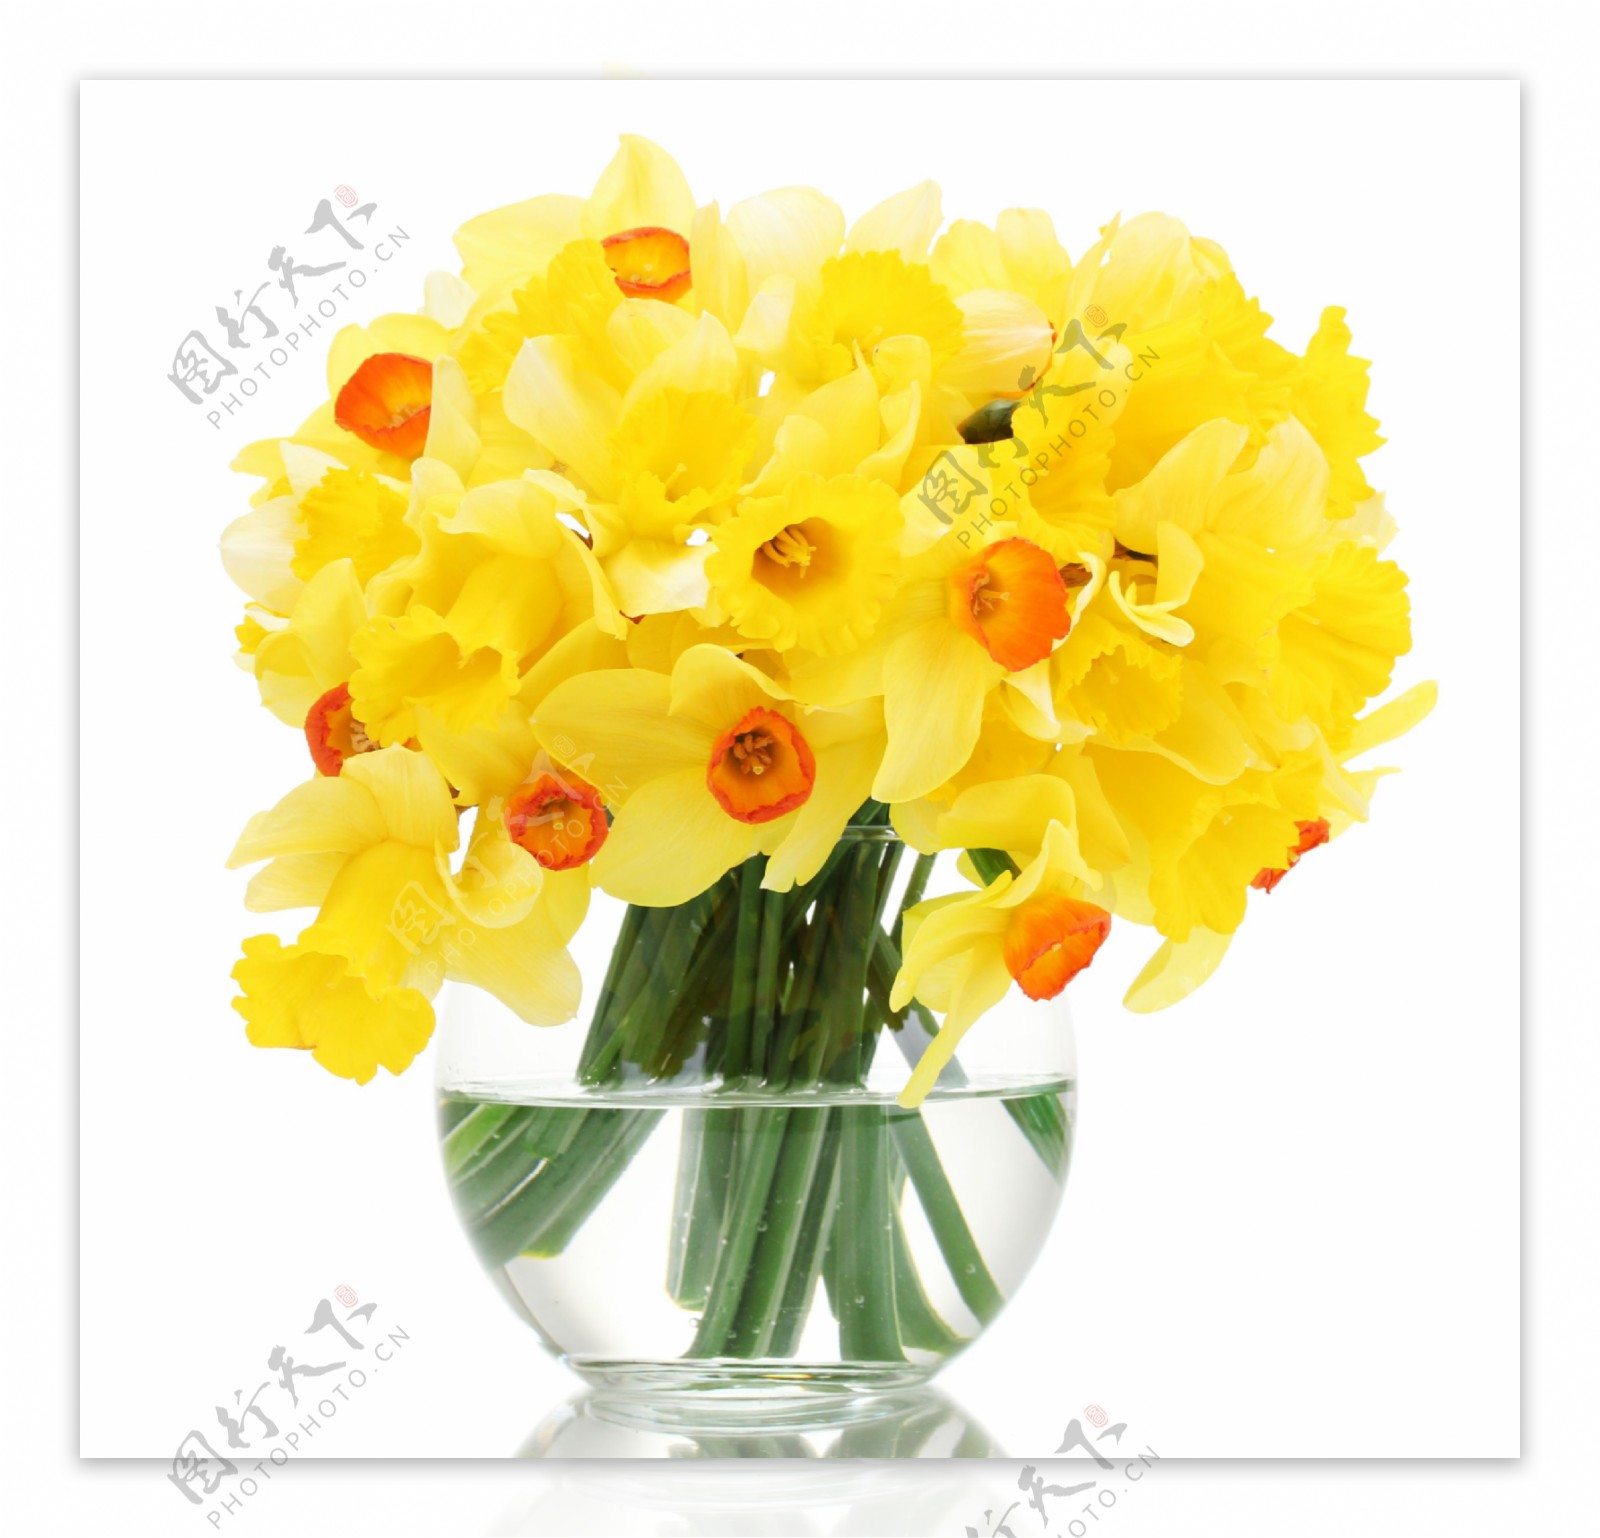 玻璃缸里的黄色花朵图片